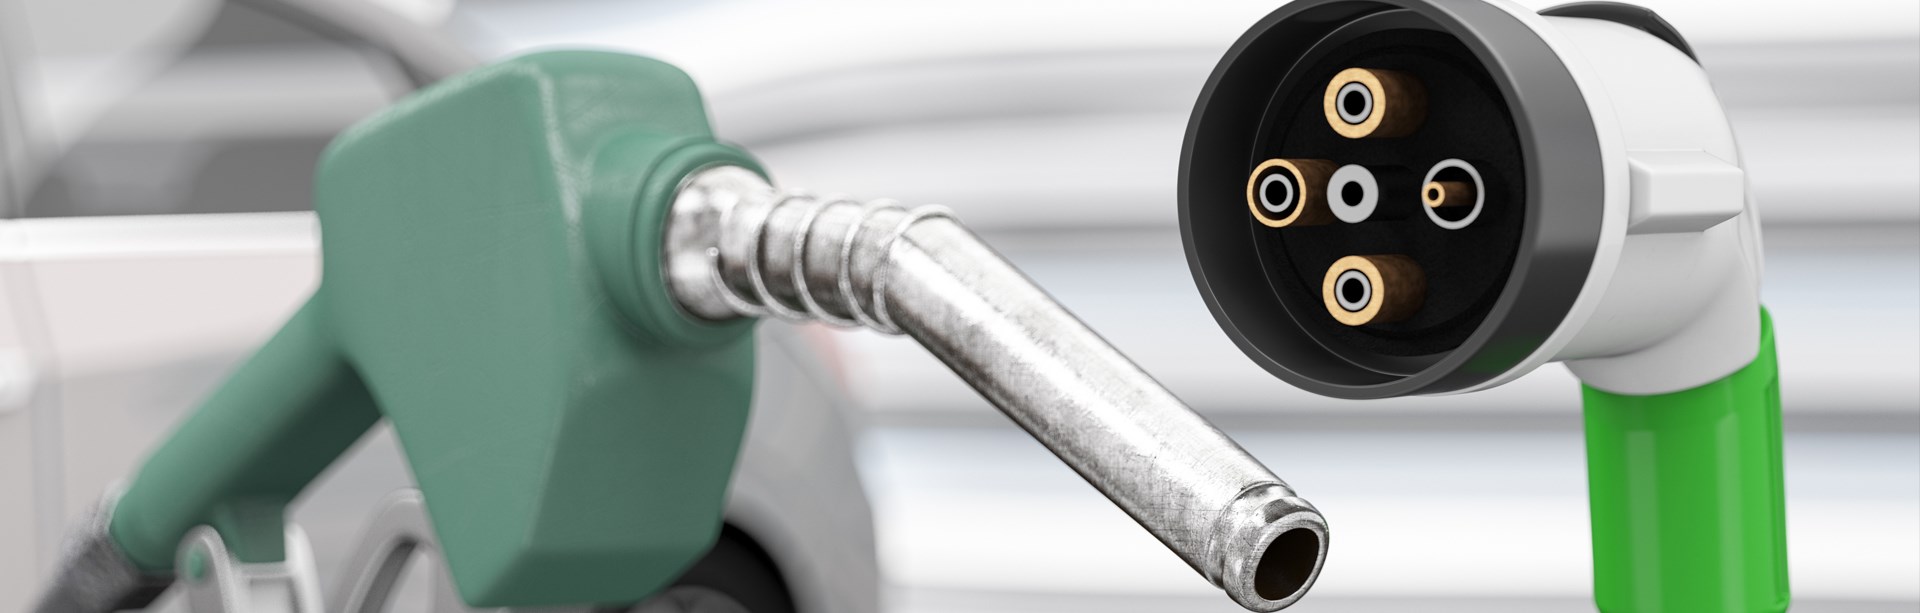 Använd bilkostnadskalkylen för att räkna vad elbilen kostar